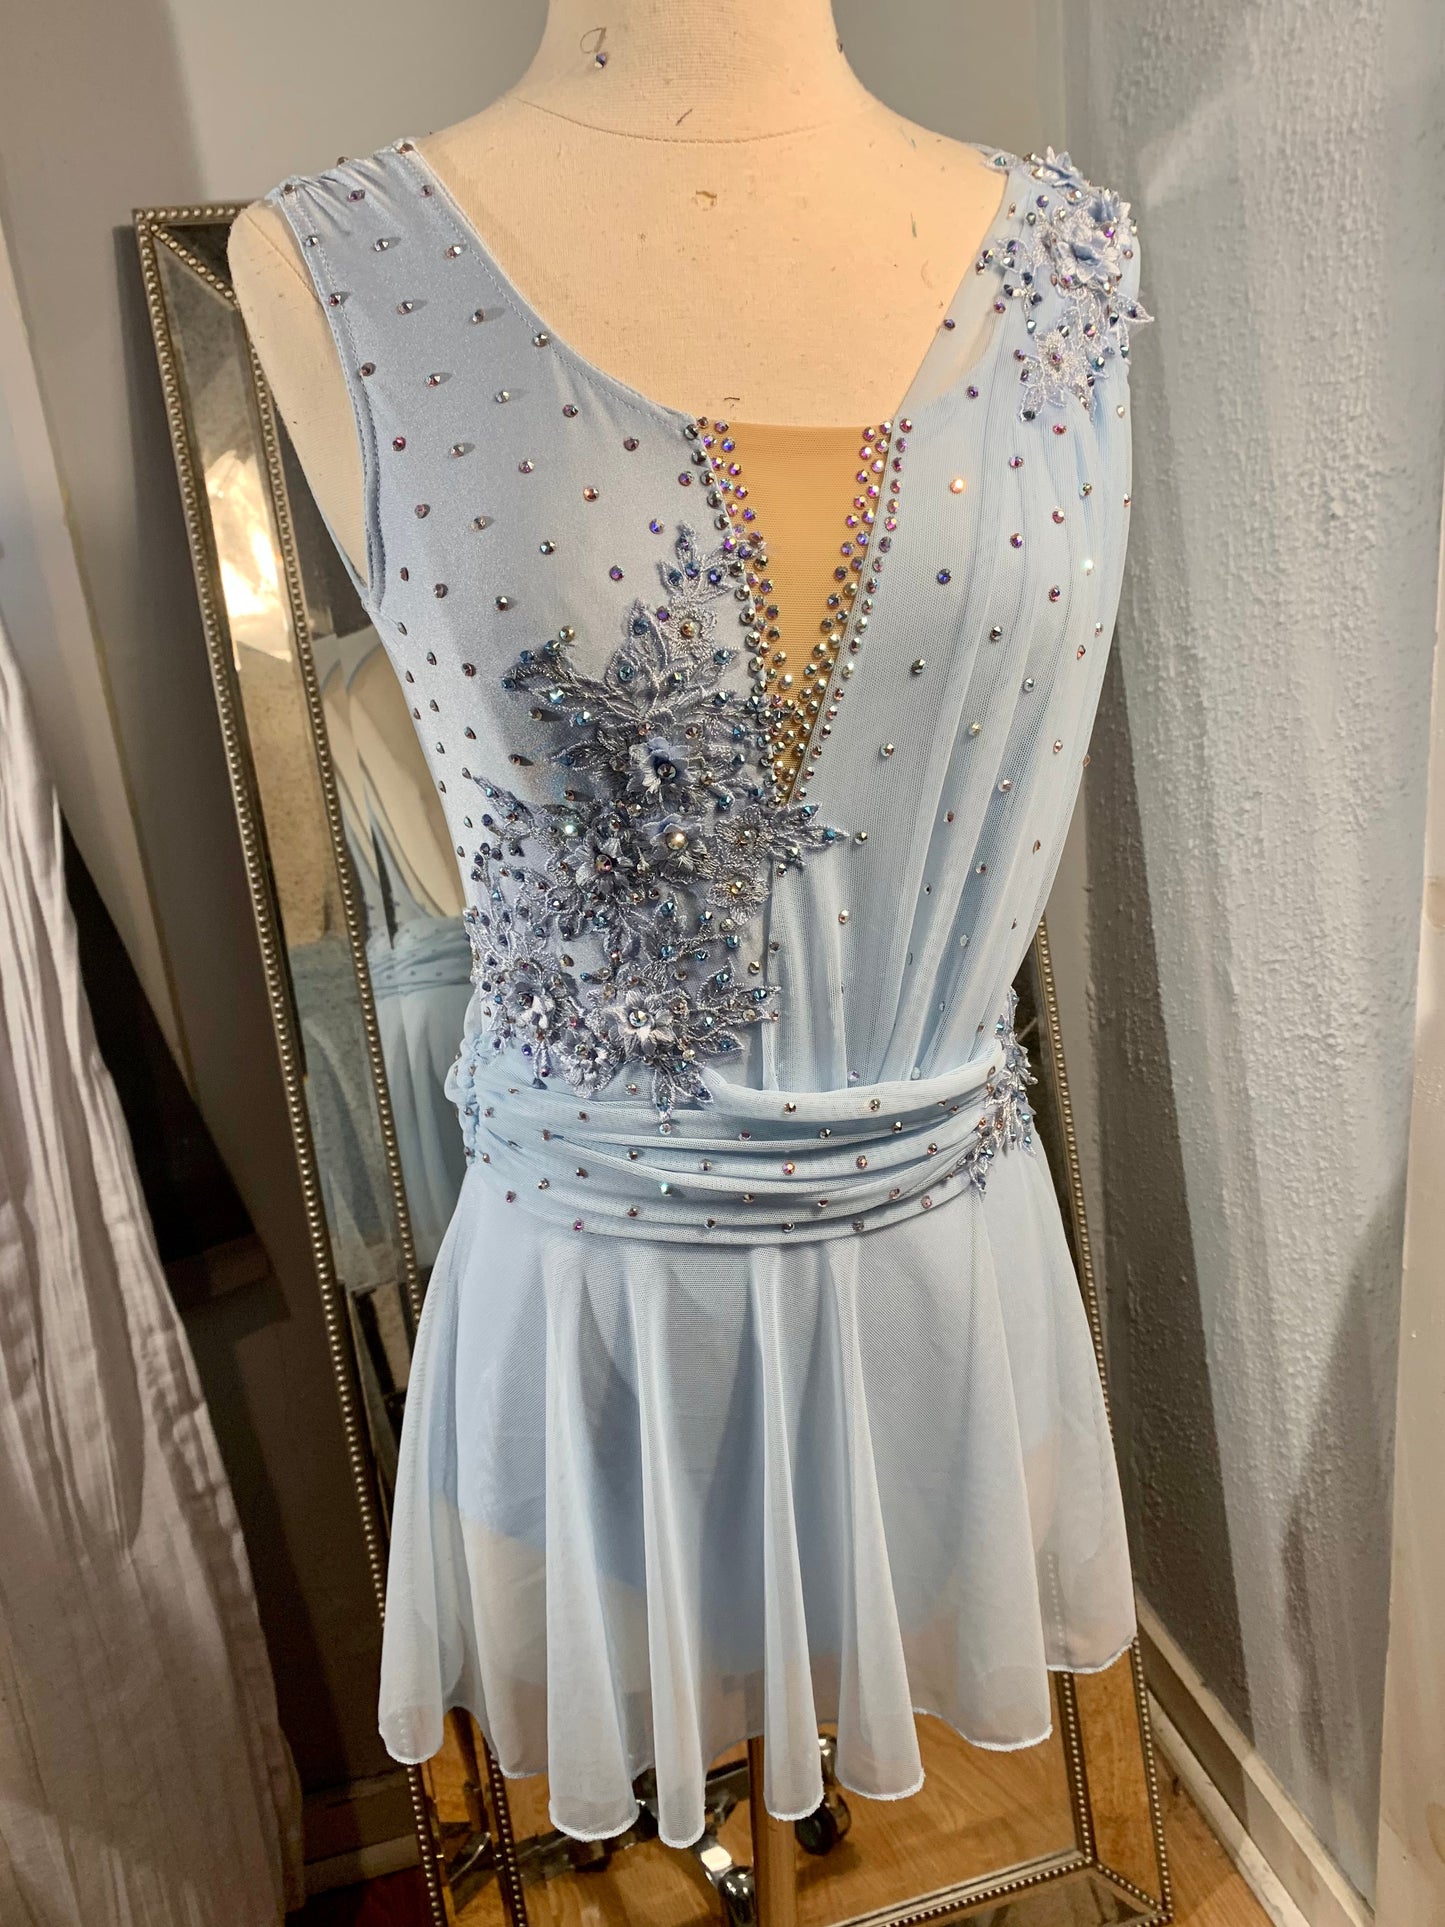 BELLE sky blue appliqued figure skating dress